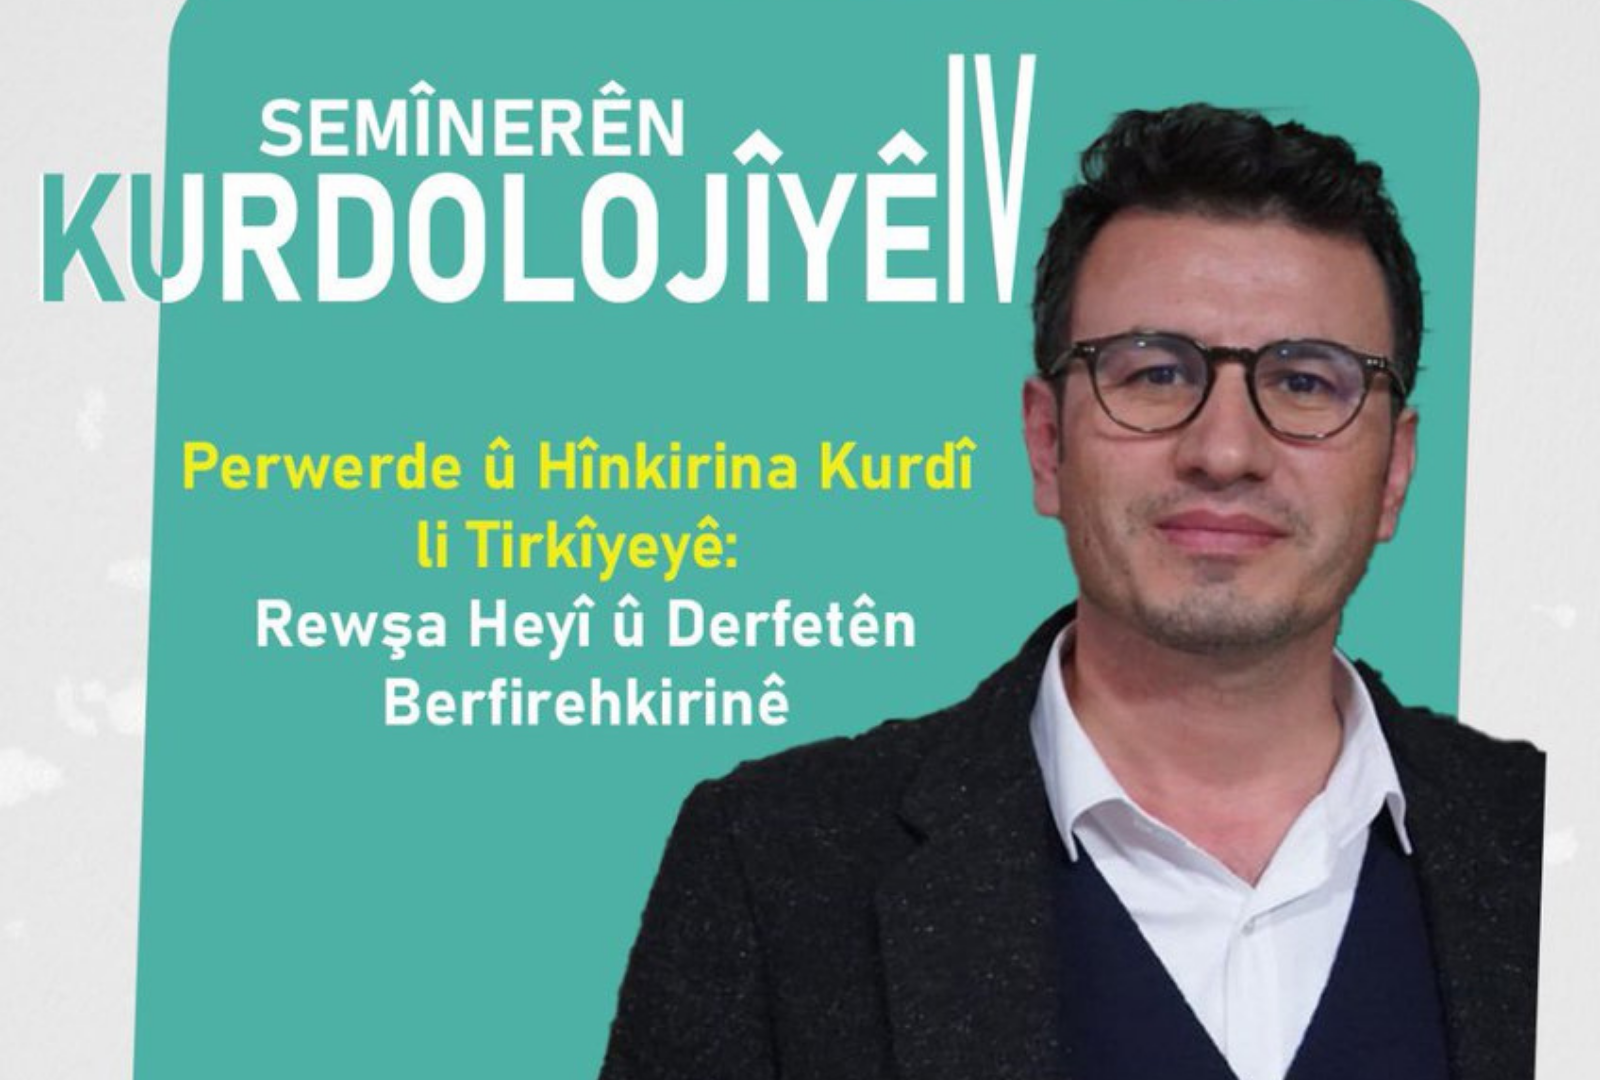 Akademîsyen Şehmus Kurt dê li ser ‘Perwerde û Hînkirina Kurdî li Tirkîyeyê’ biaxive